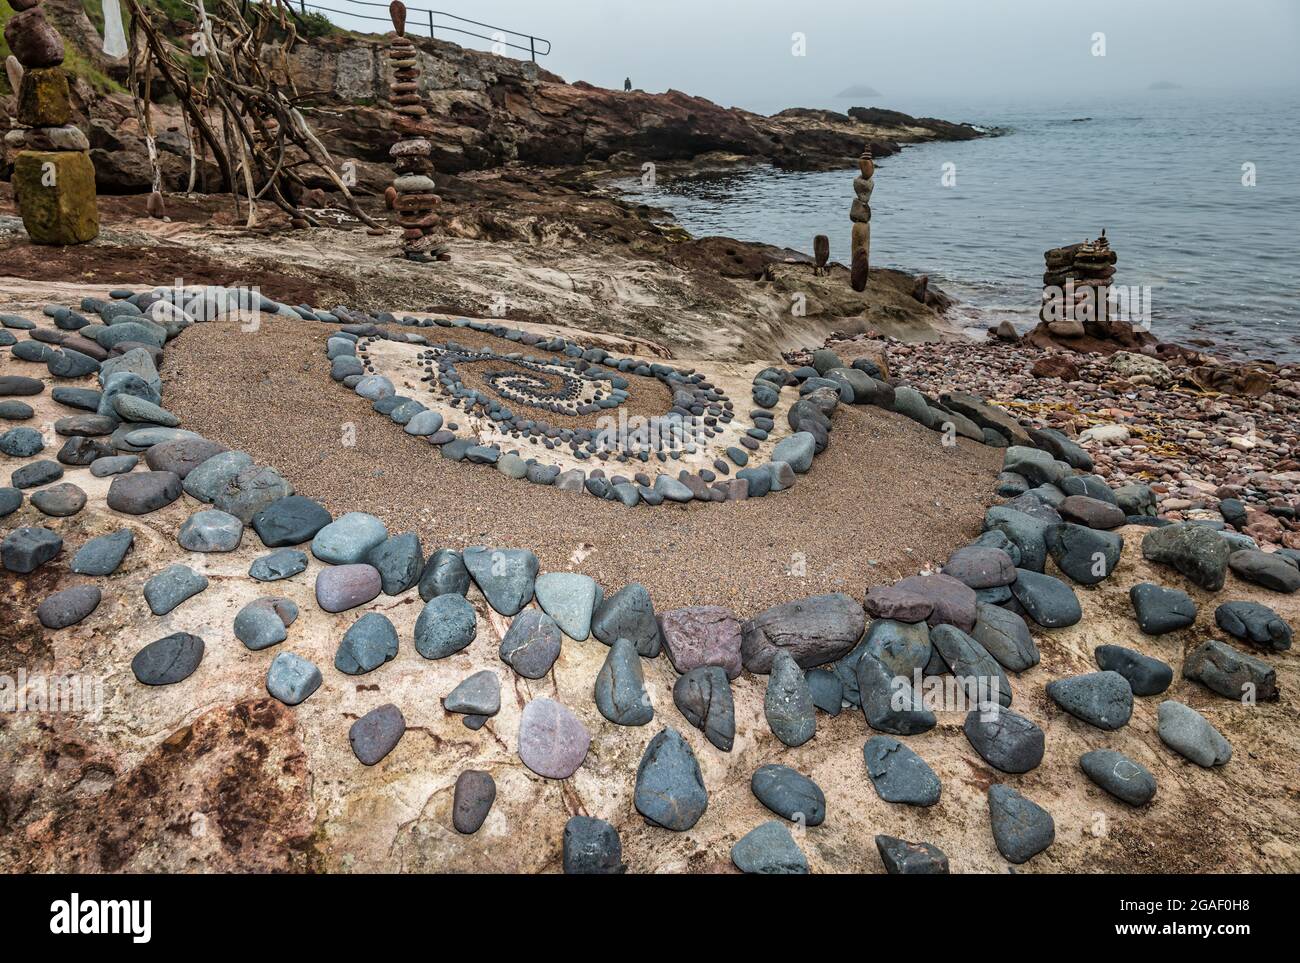 Sculpture en pierre ou en pierre, motif en spirale et piles de pierres équilibrées sur la plage, Dunbar, East Lothian, Écosse, Royaume-Uni Banque D'Images